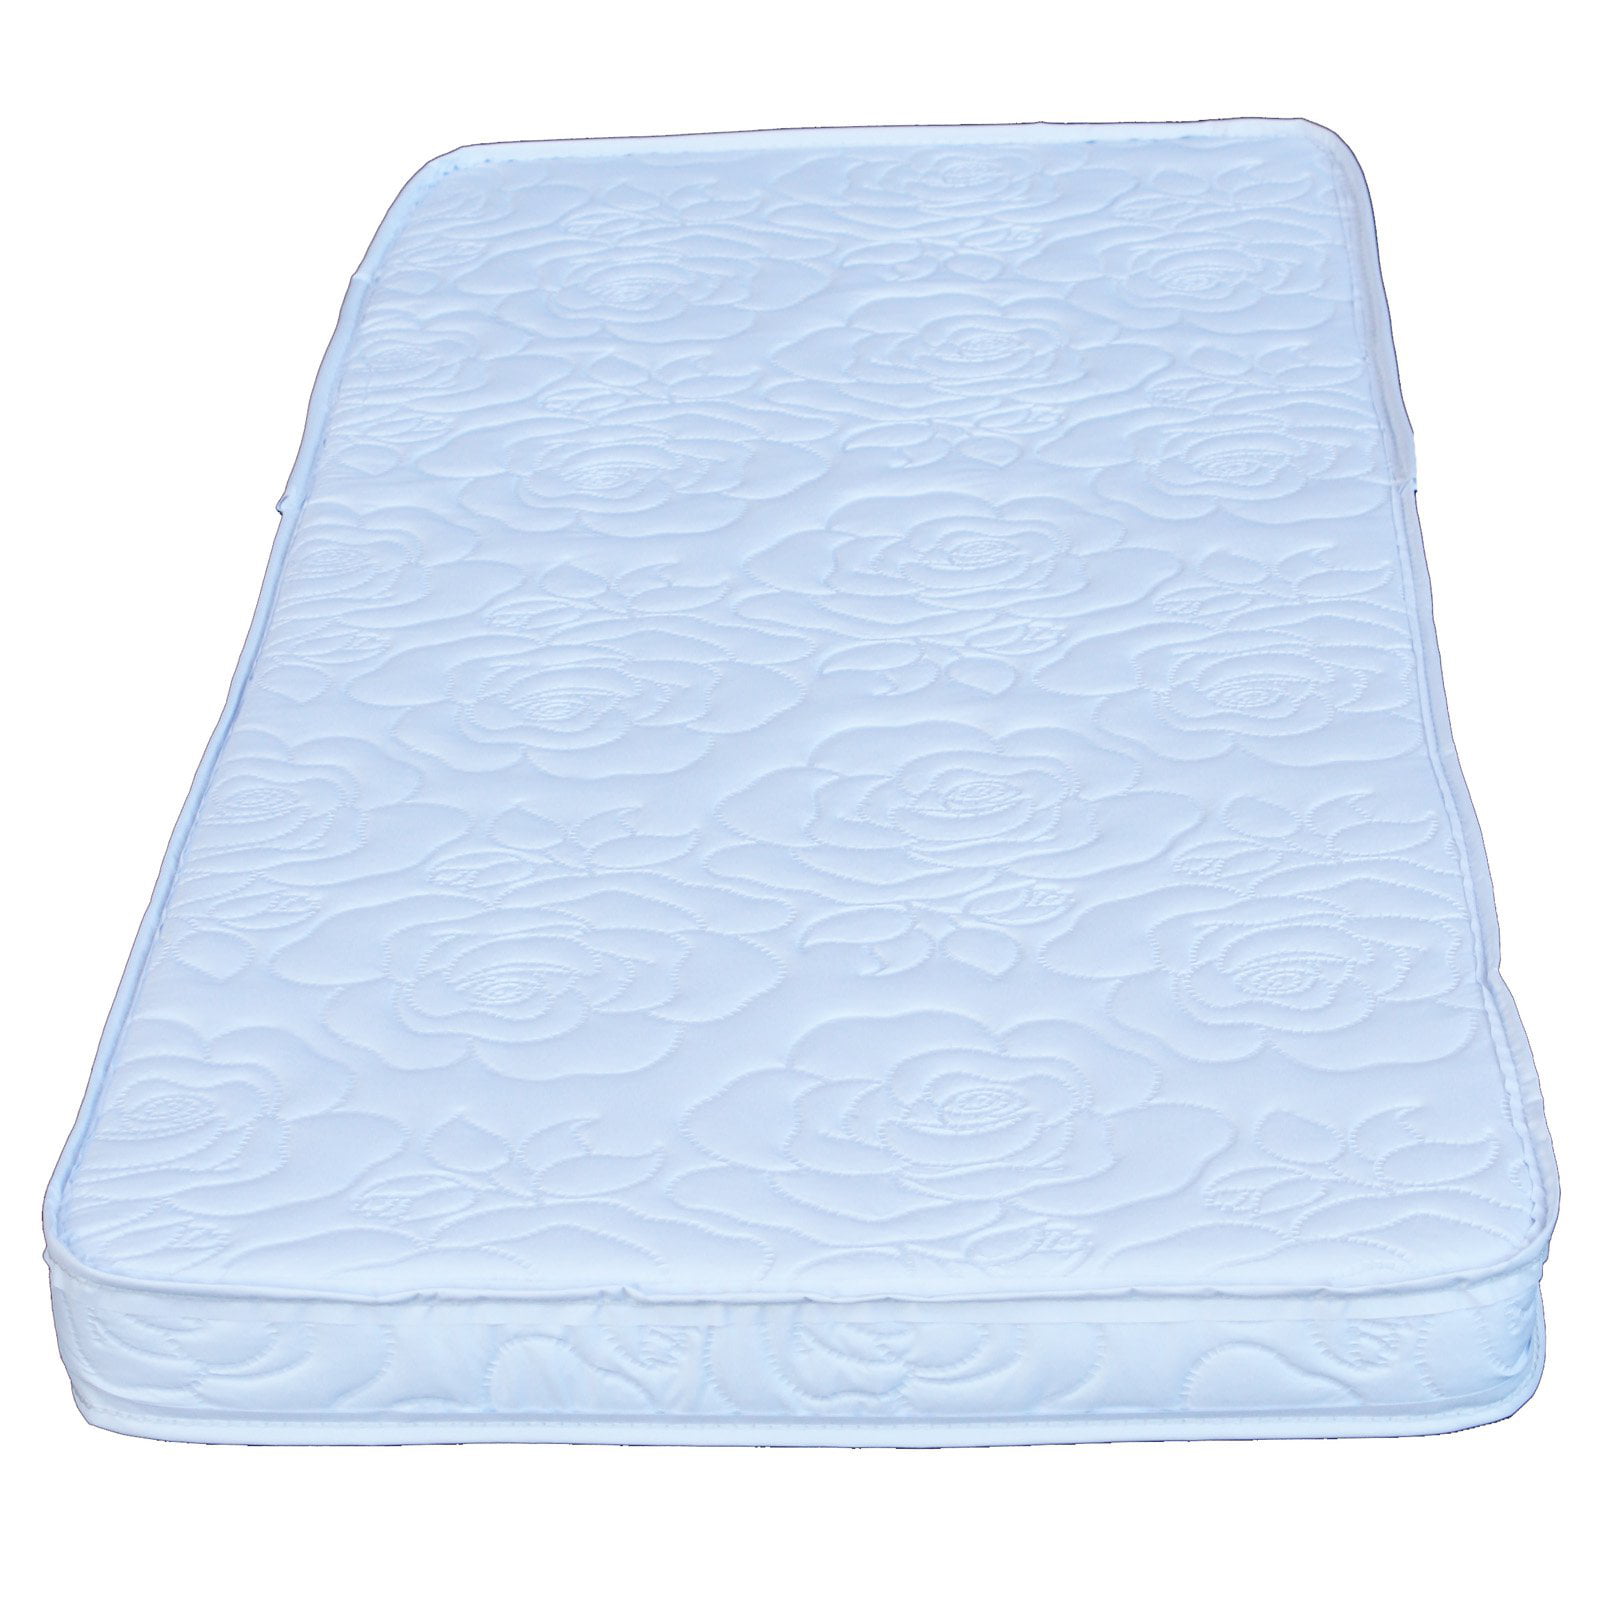 colgate cradle mattress